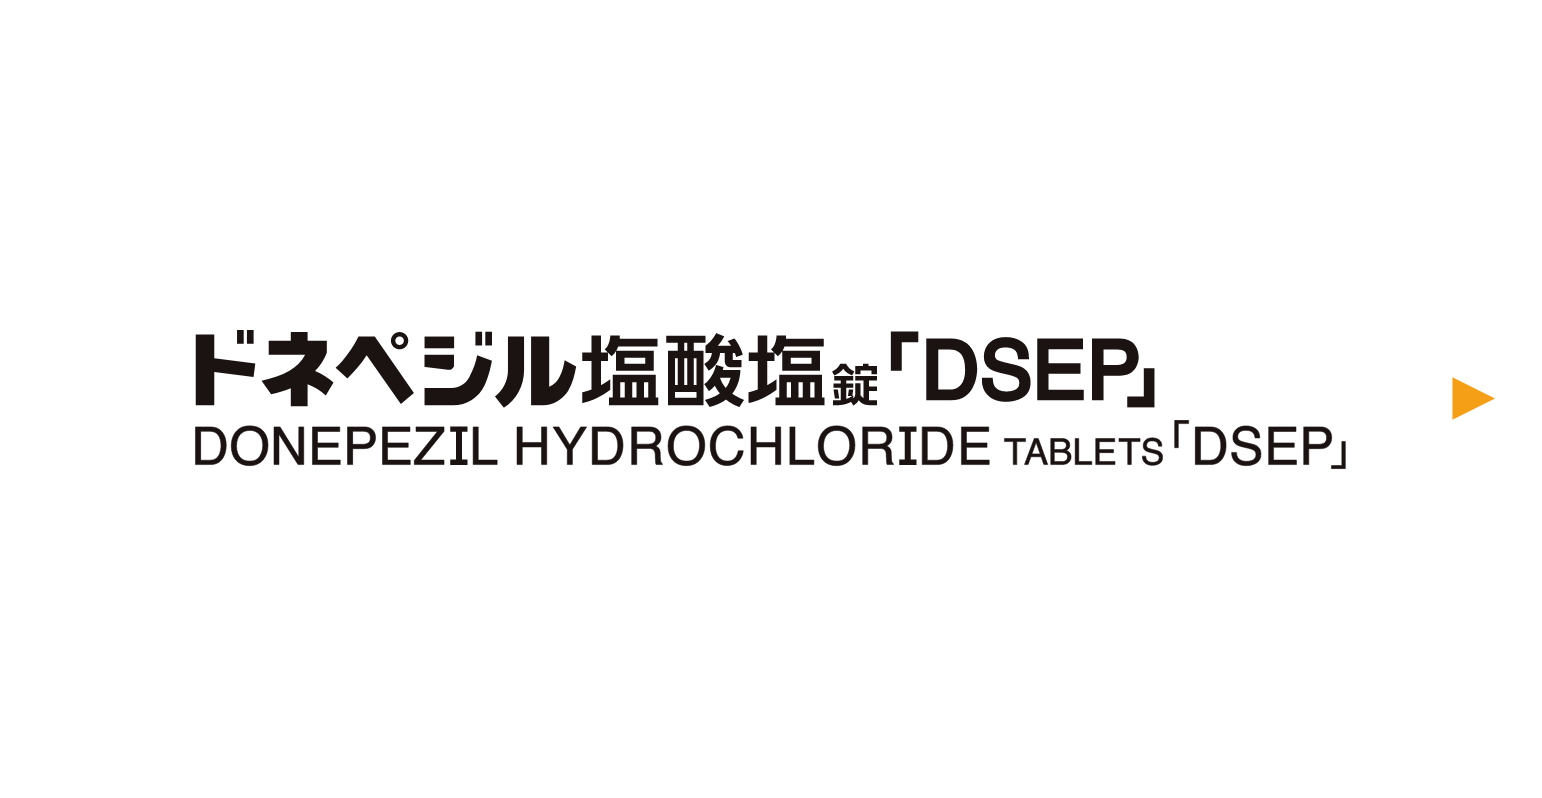 ドネペジル塩酸塩錠「DSEP」